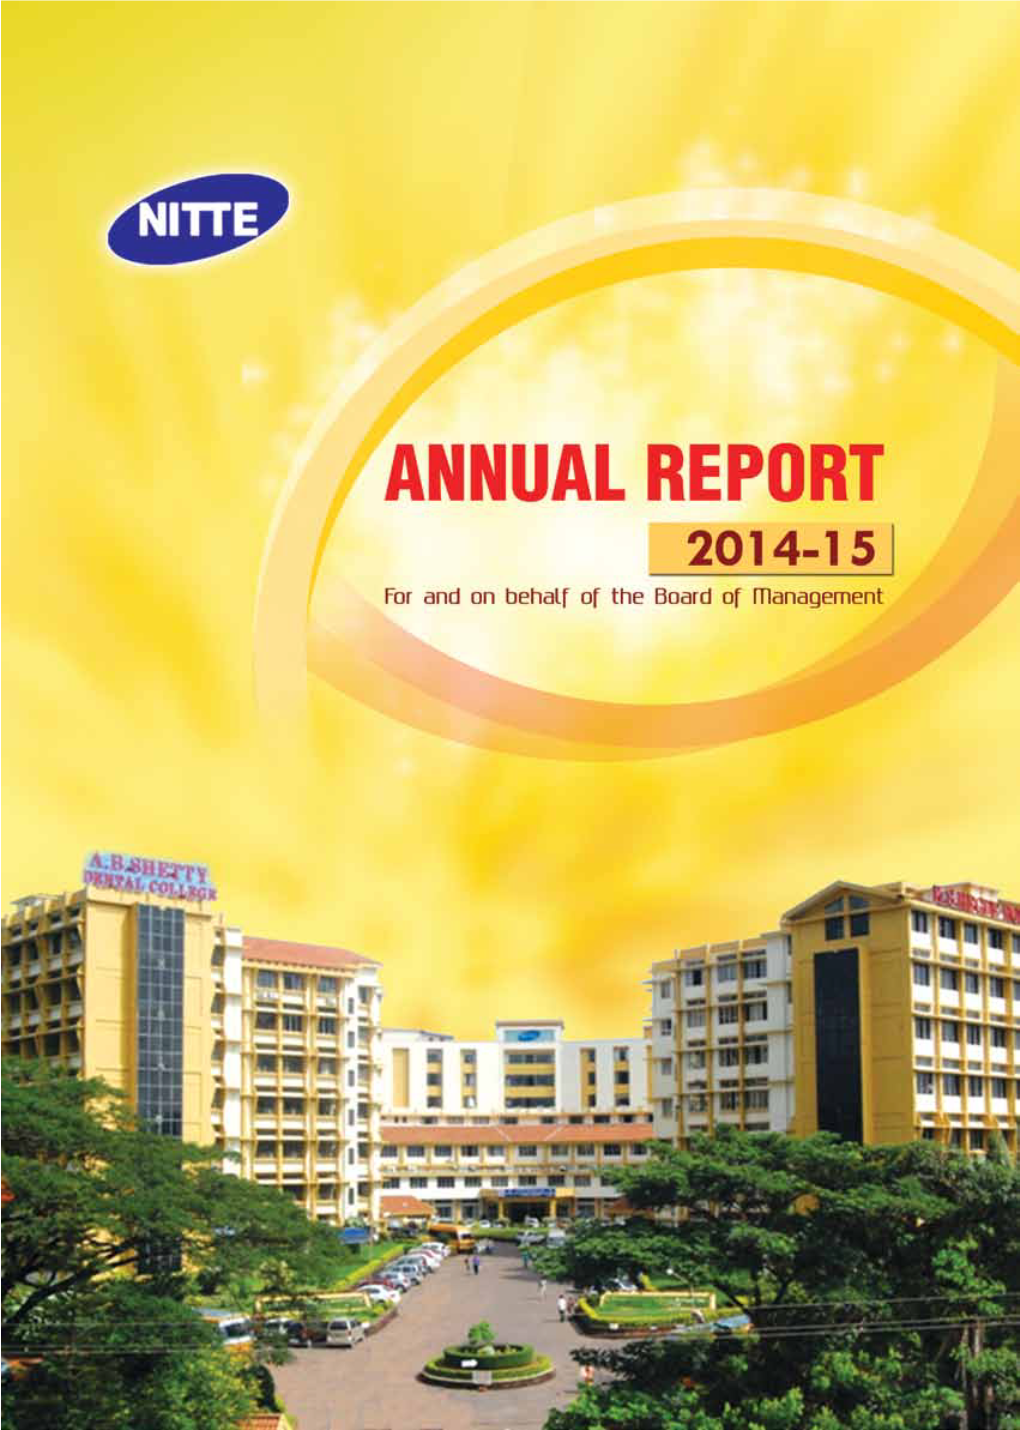 Annual Report 2014-15 1 2 Annual Report 2014-15 Annual Report 2014-15 3 the IMMORTAL